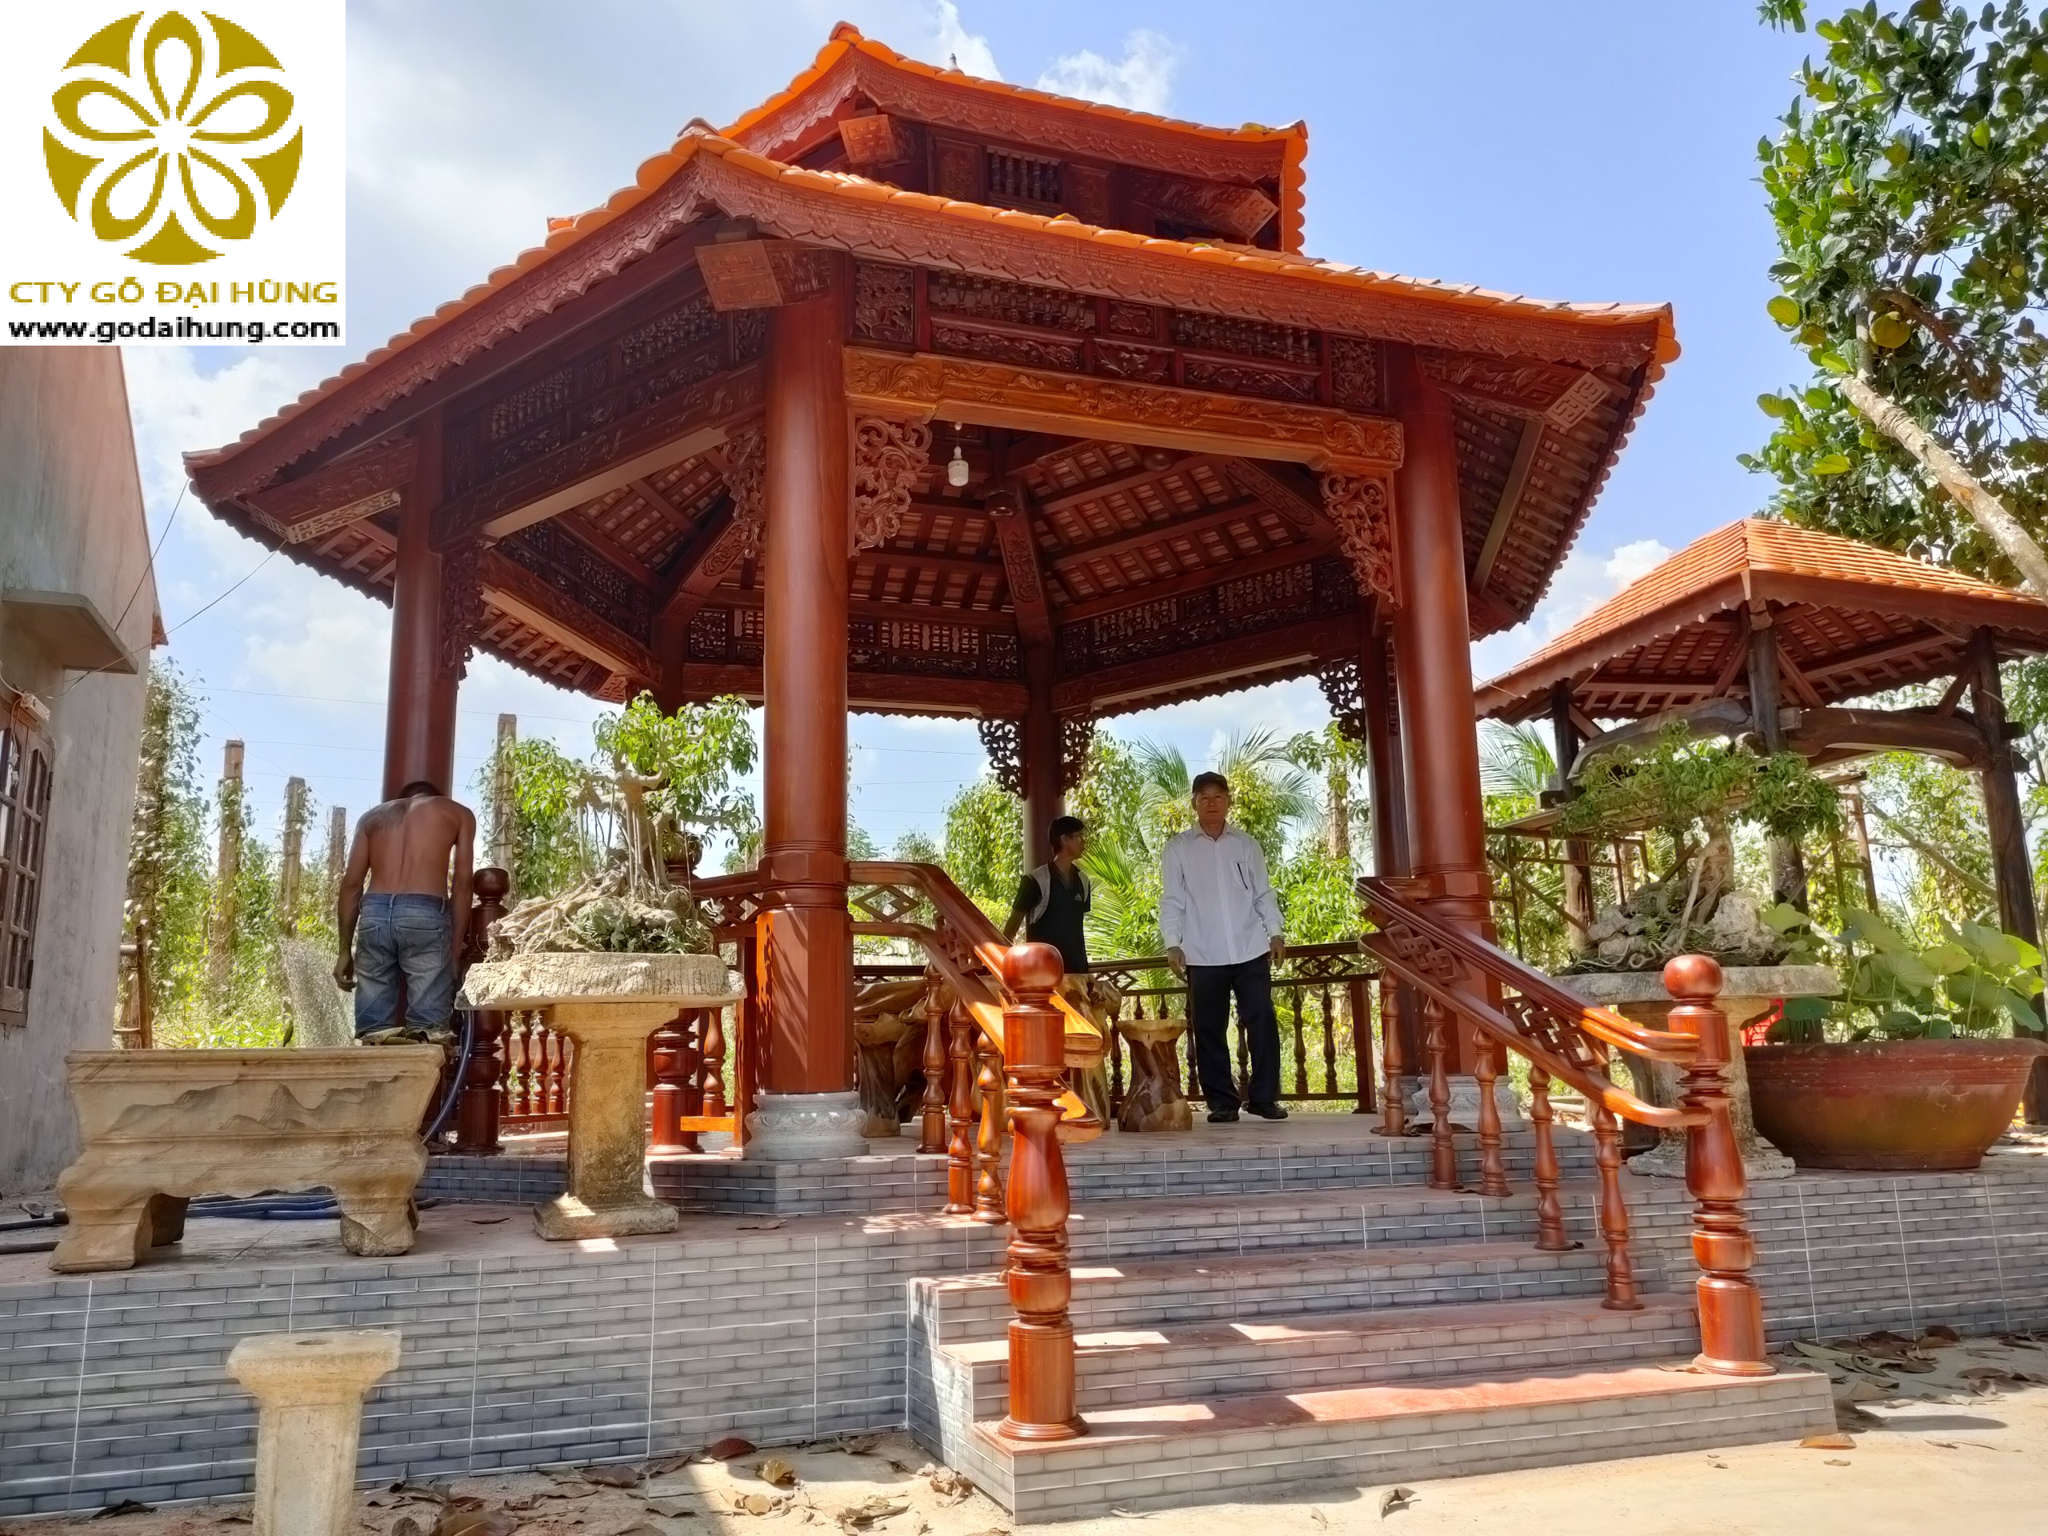 Hoàn thiện và bàn giao nhà lục giác cổ lầu chất liệu gỗ lim tại thành phố buôn mê Thuột tỉnh Đăk Lăk